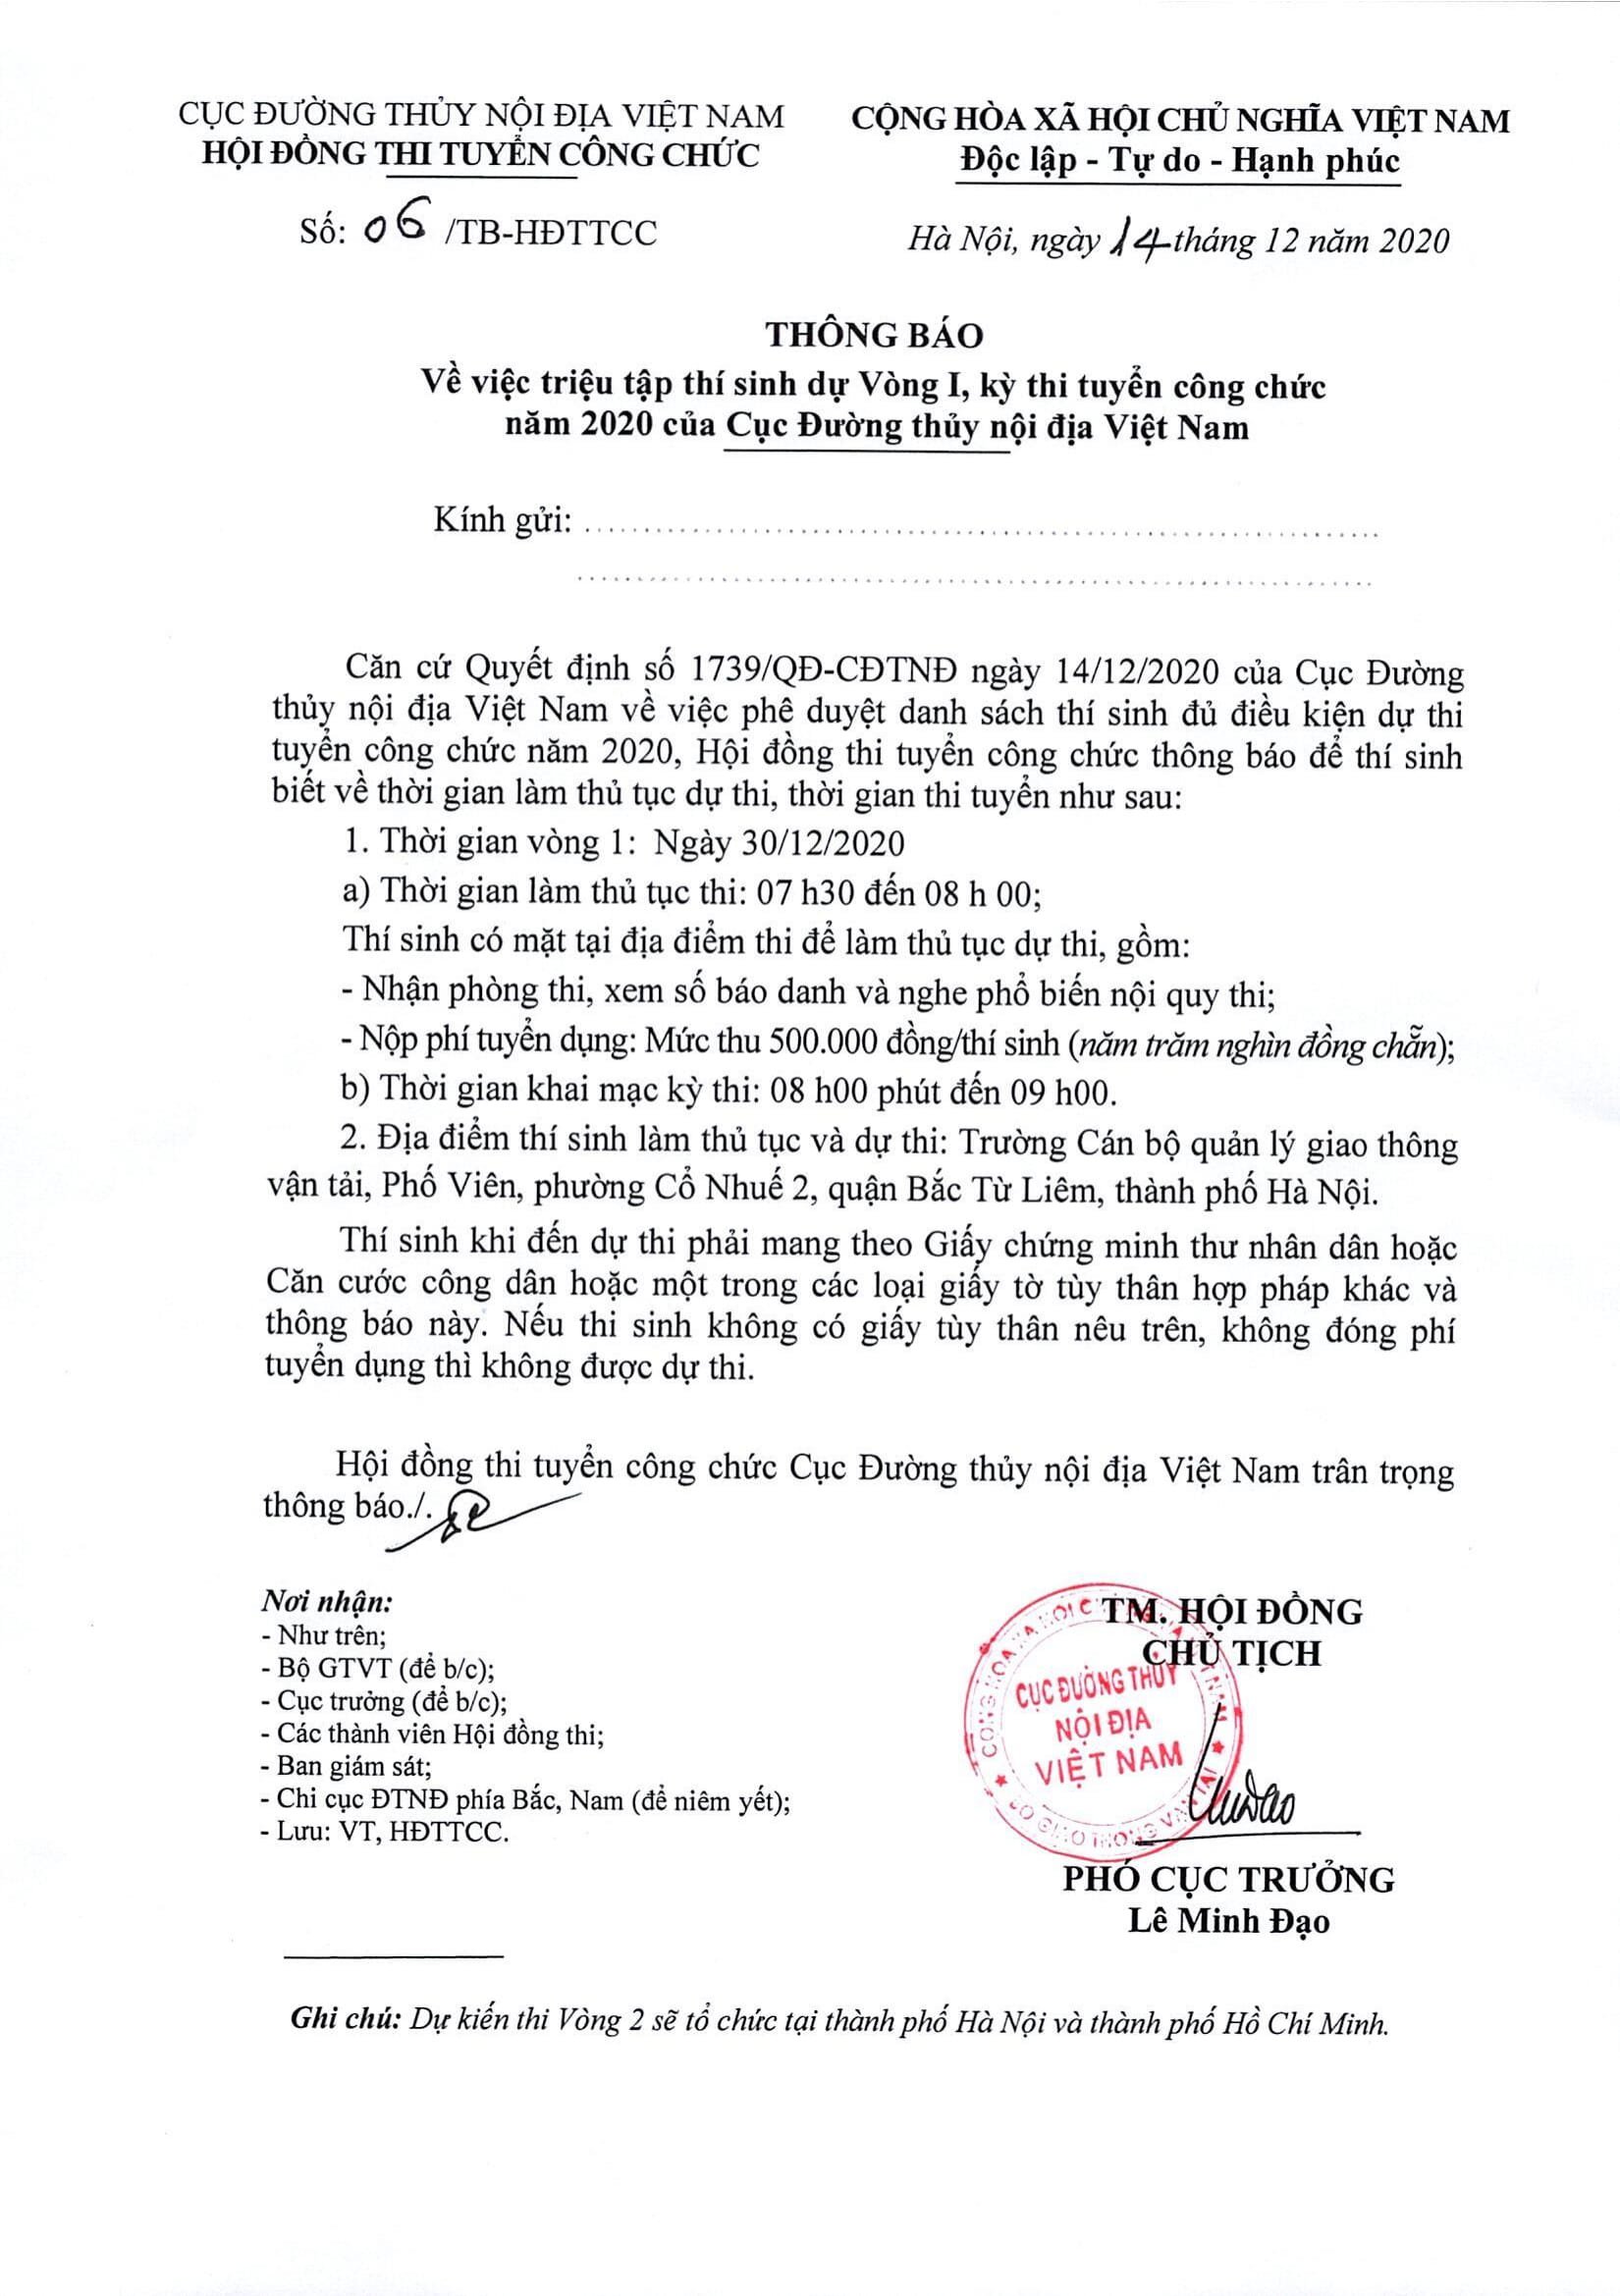 THÔNG BÁO: Về việc triệu tập thí sinh dự Vòng I, kỳ thi tuyển công chức năm 2020 của Cục Đường thủy nội địa Việt Nam